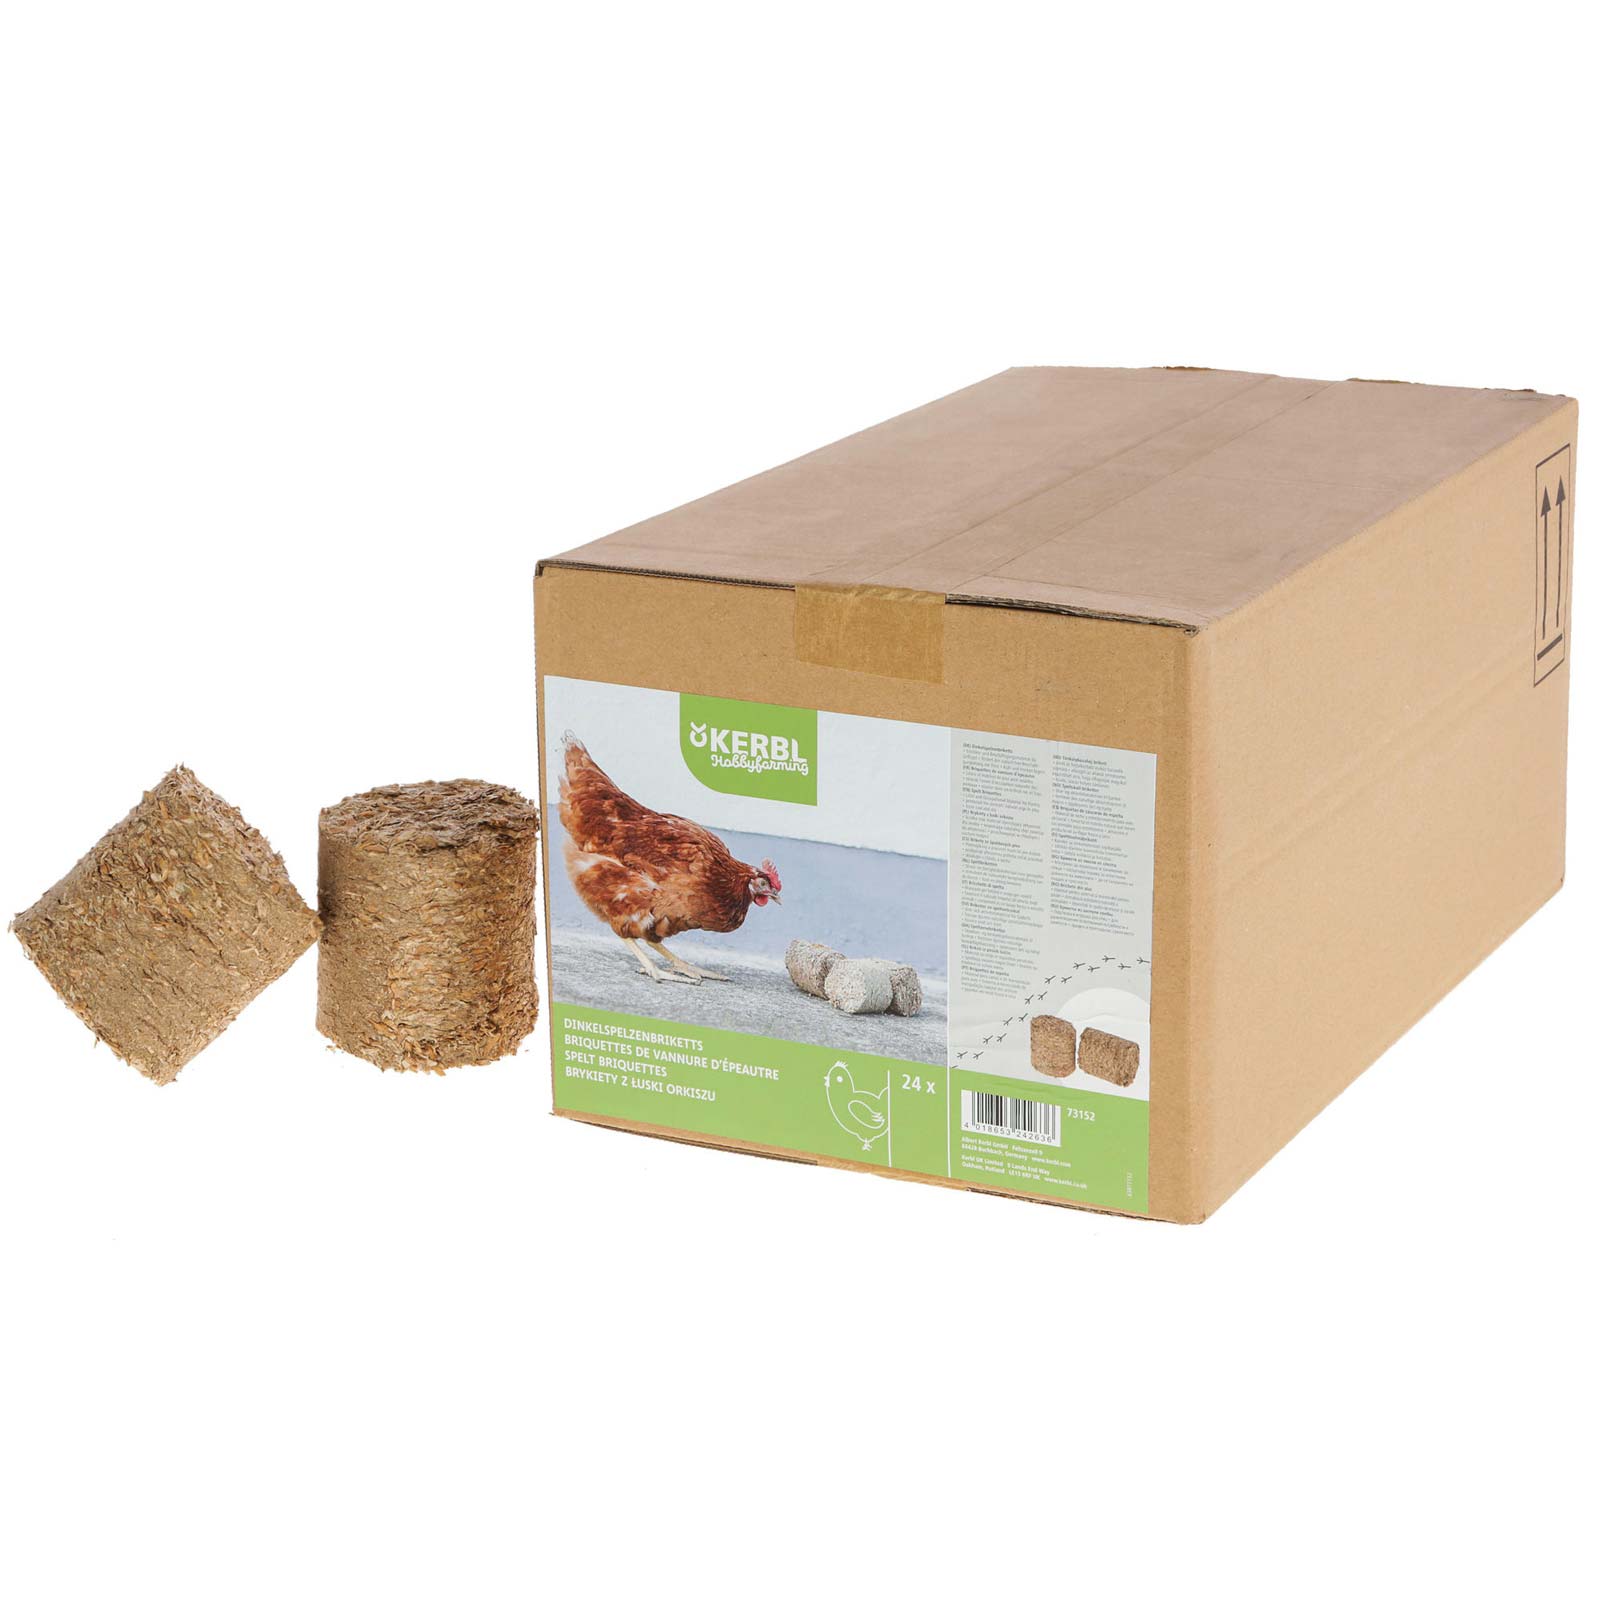 Briketter av speltskal i kartong (förpackning med 24 st)